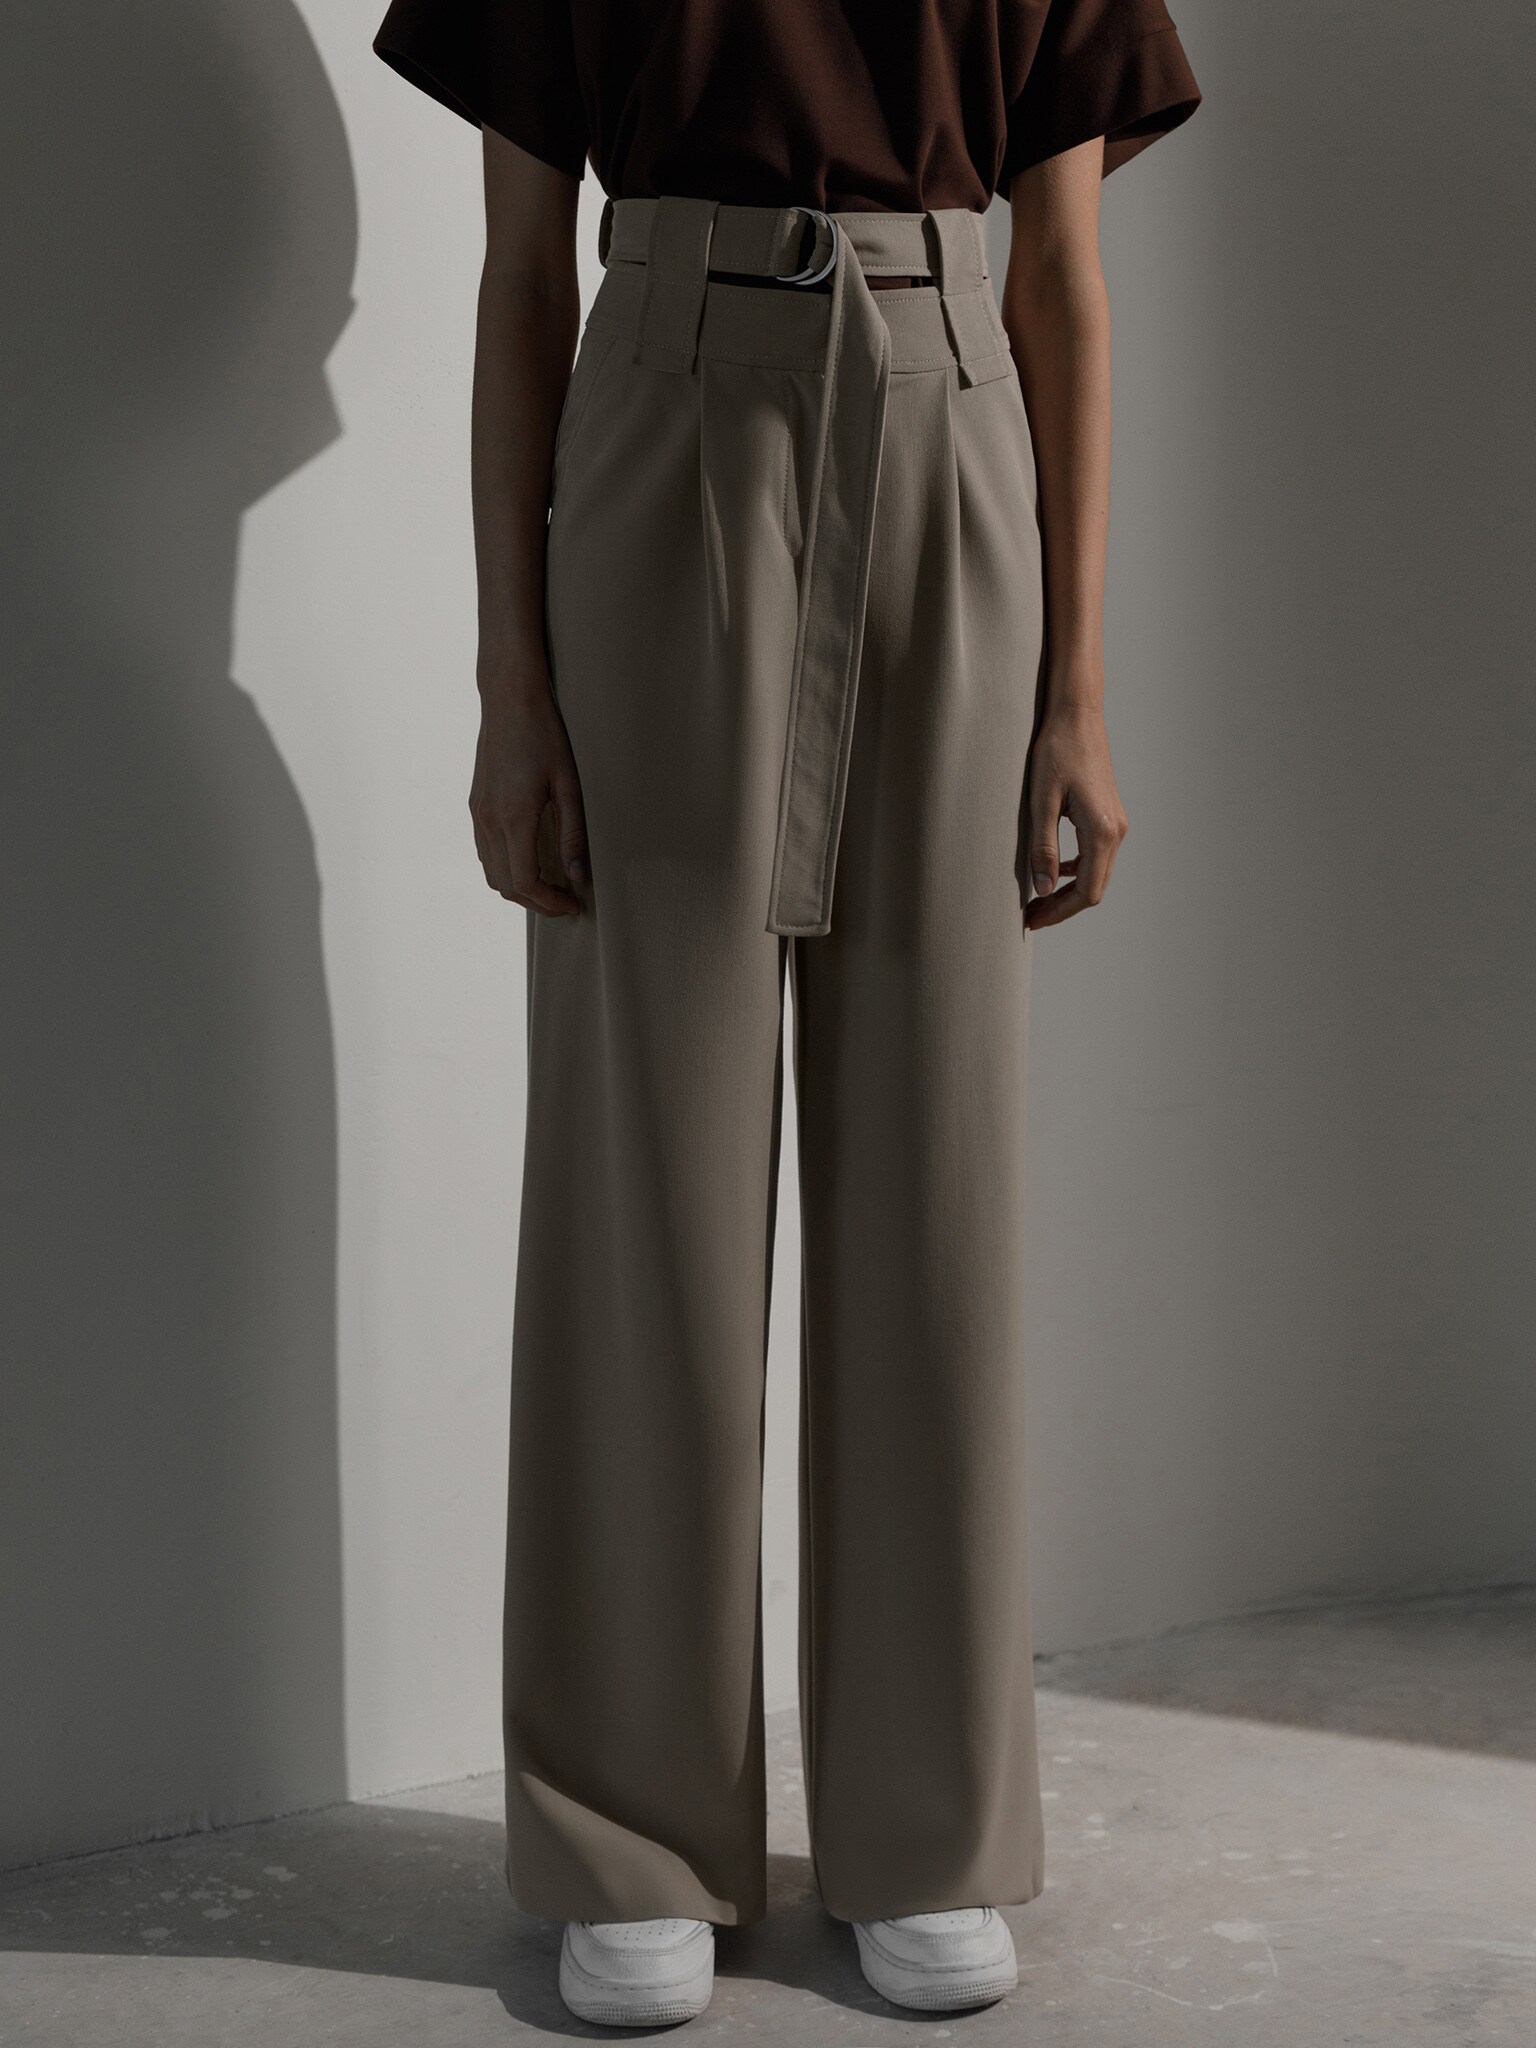 LICHI - Online fashion store :: Double-waistband palazzo pants